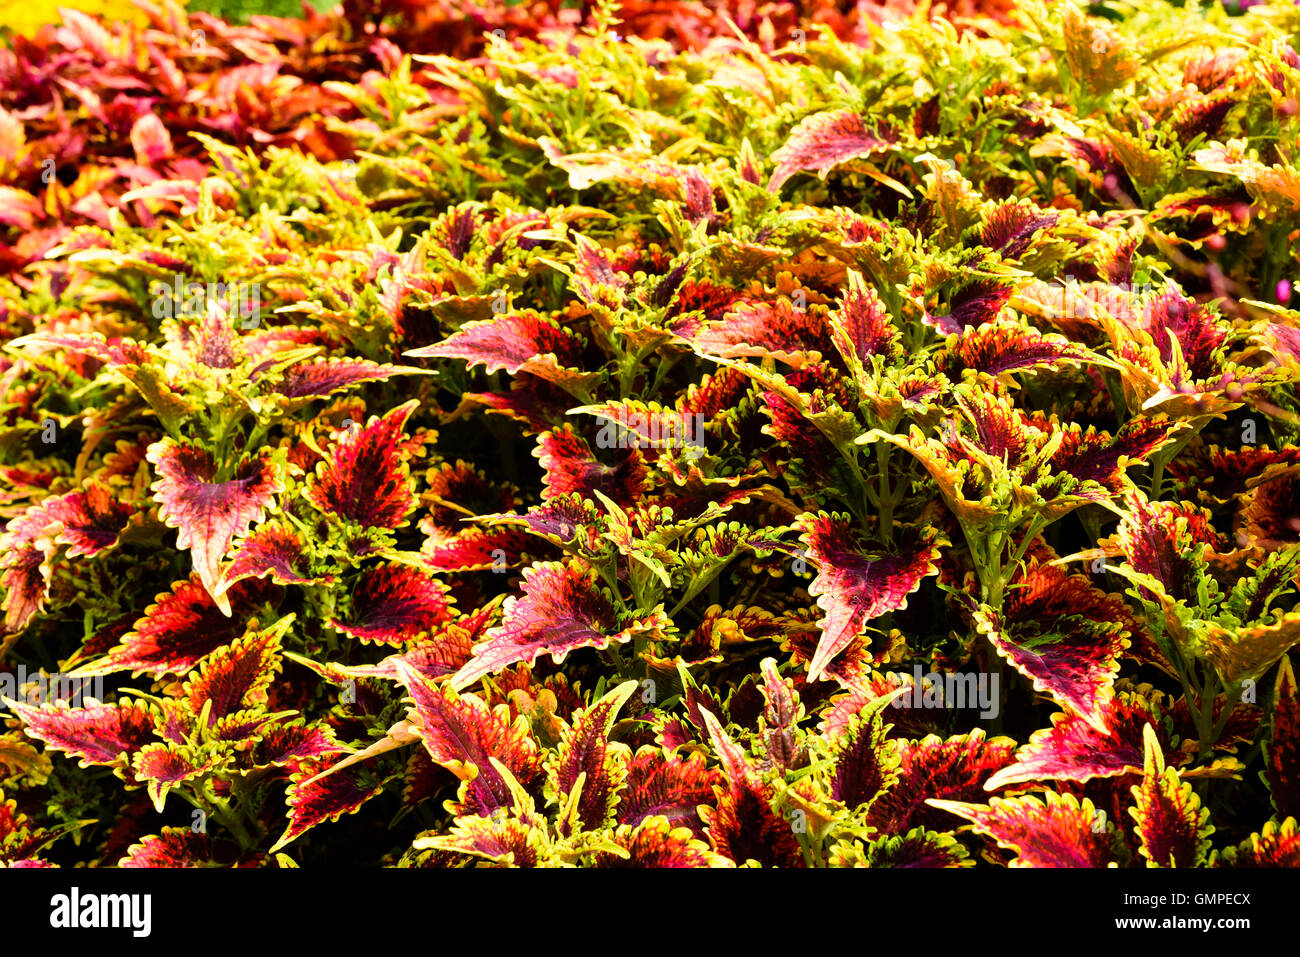 Plectranthus Scutellarioides, Coleus oder bemalte Brennnessel. Hier die Sorte Spitfire in großer Zahl in ein Blumenbeet. Stockfoto